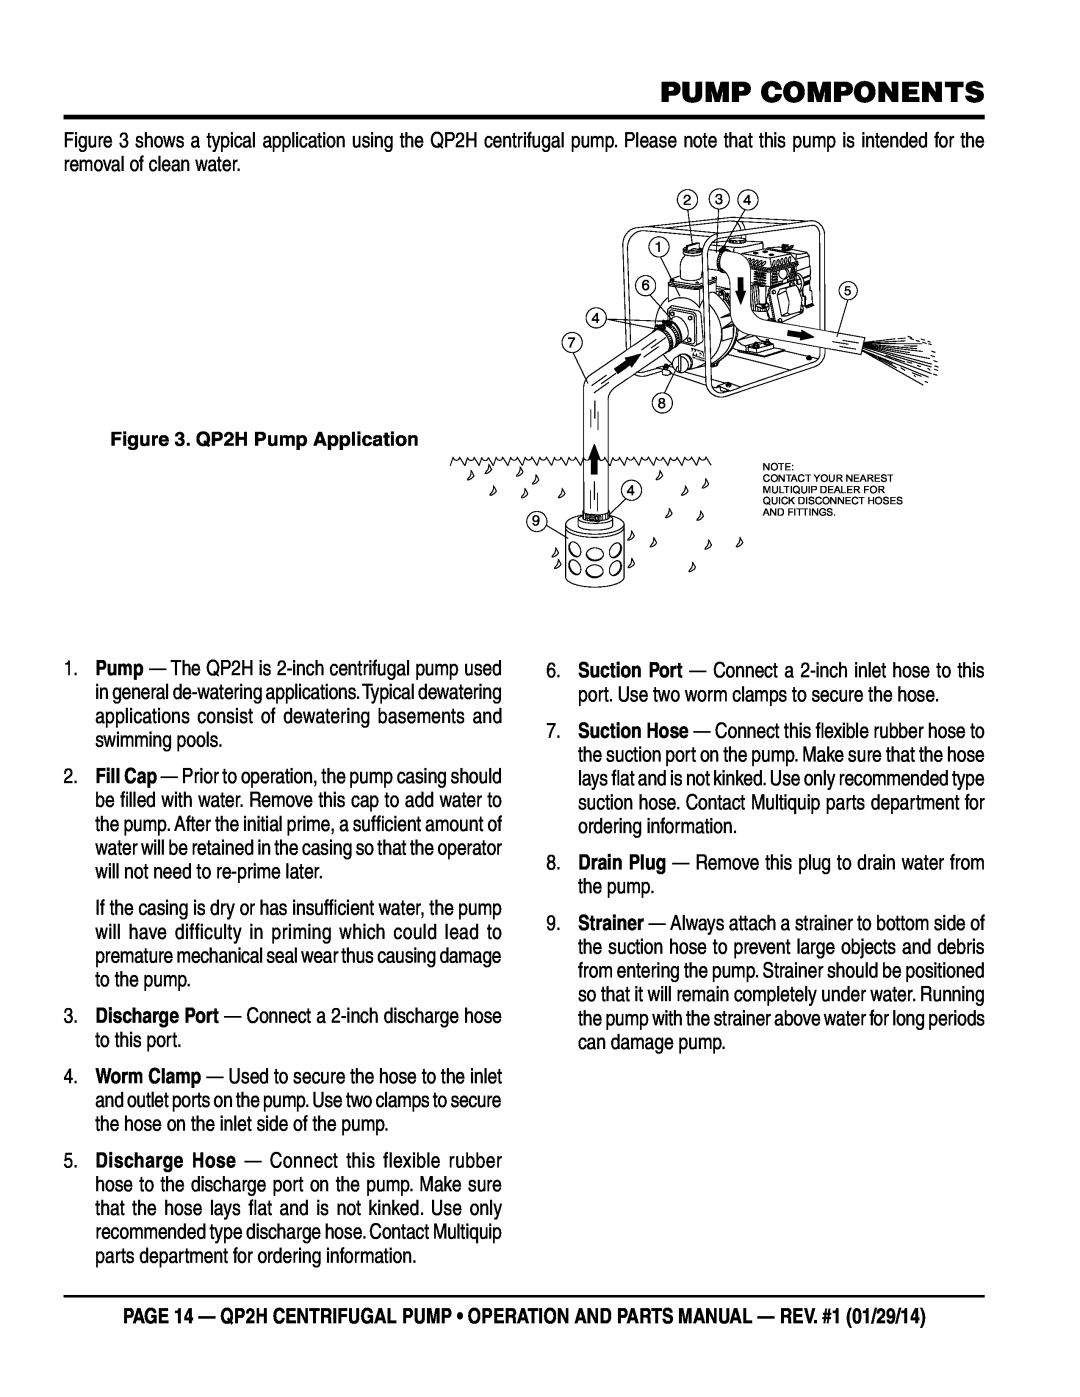 Multiquip manual Pump Components, QP2H Pump Application 